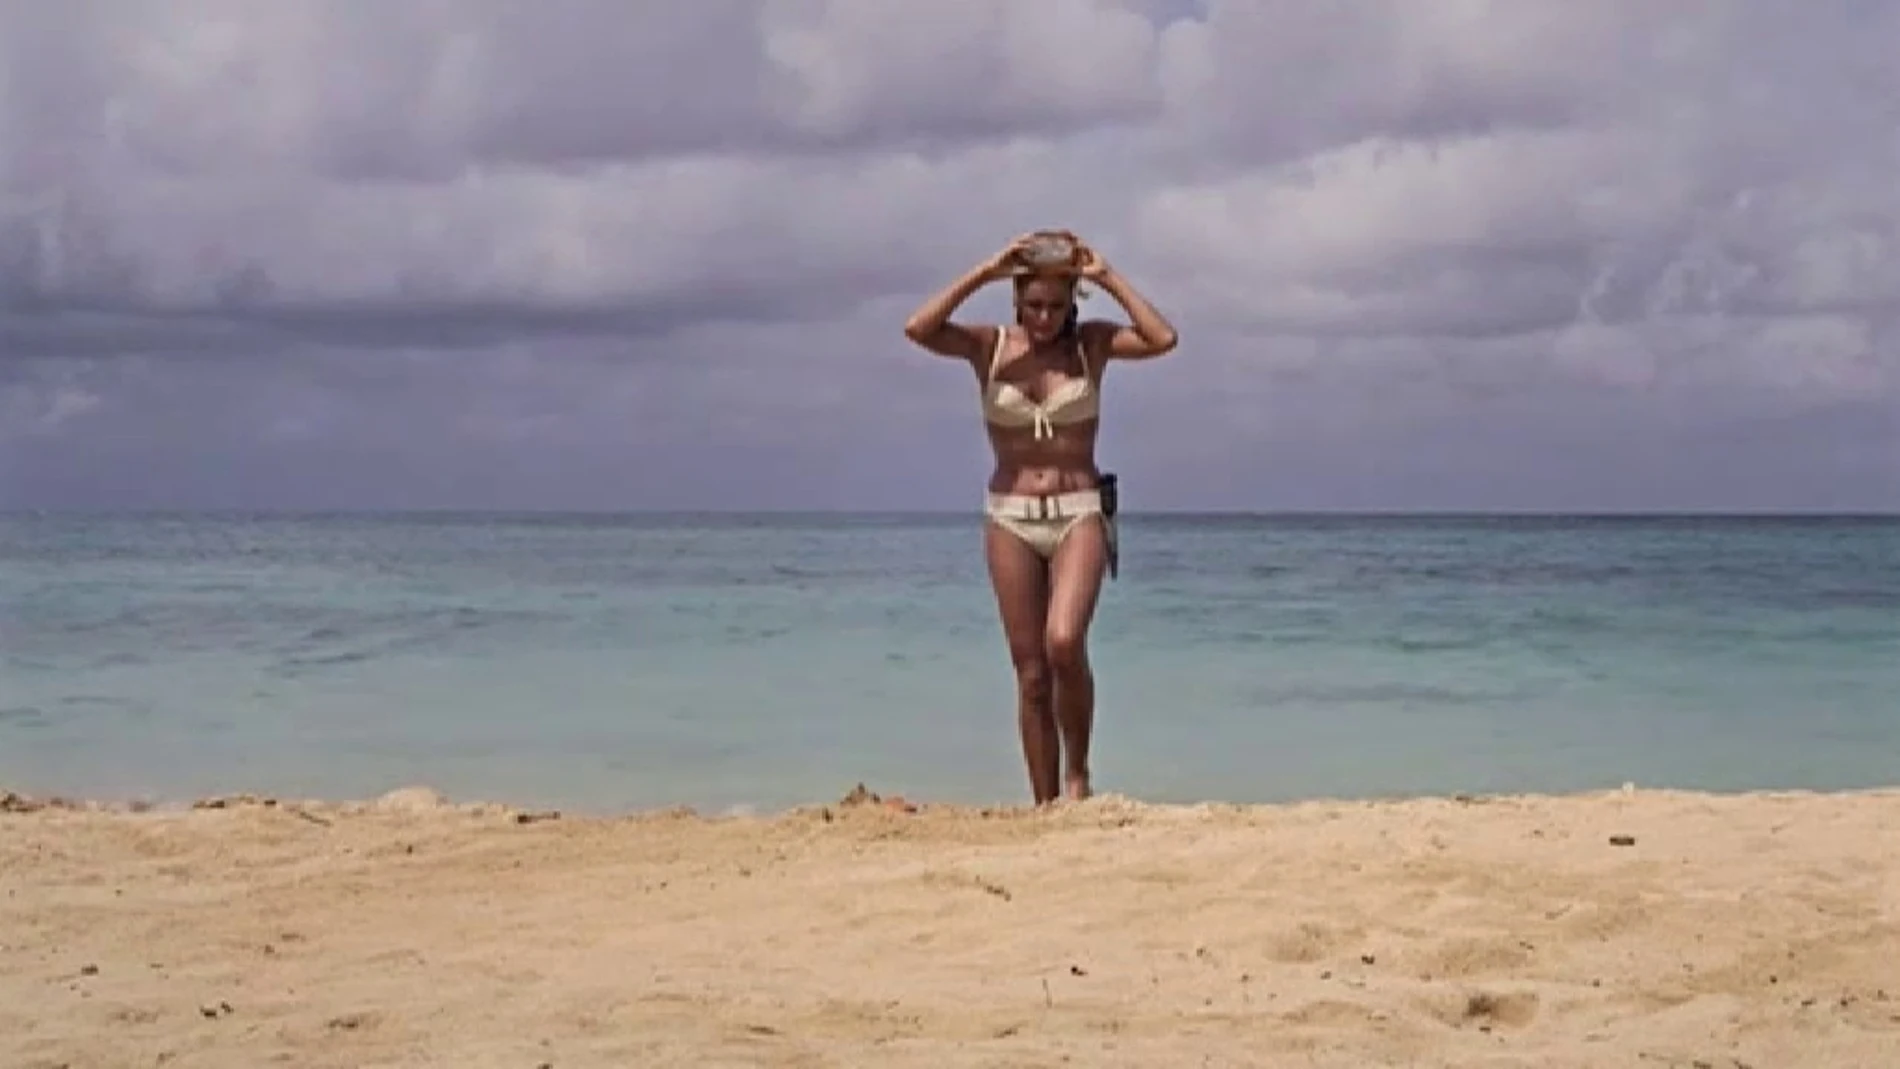 Ursula Andress en una escena de la película "Dr. No" de James Bond